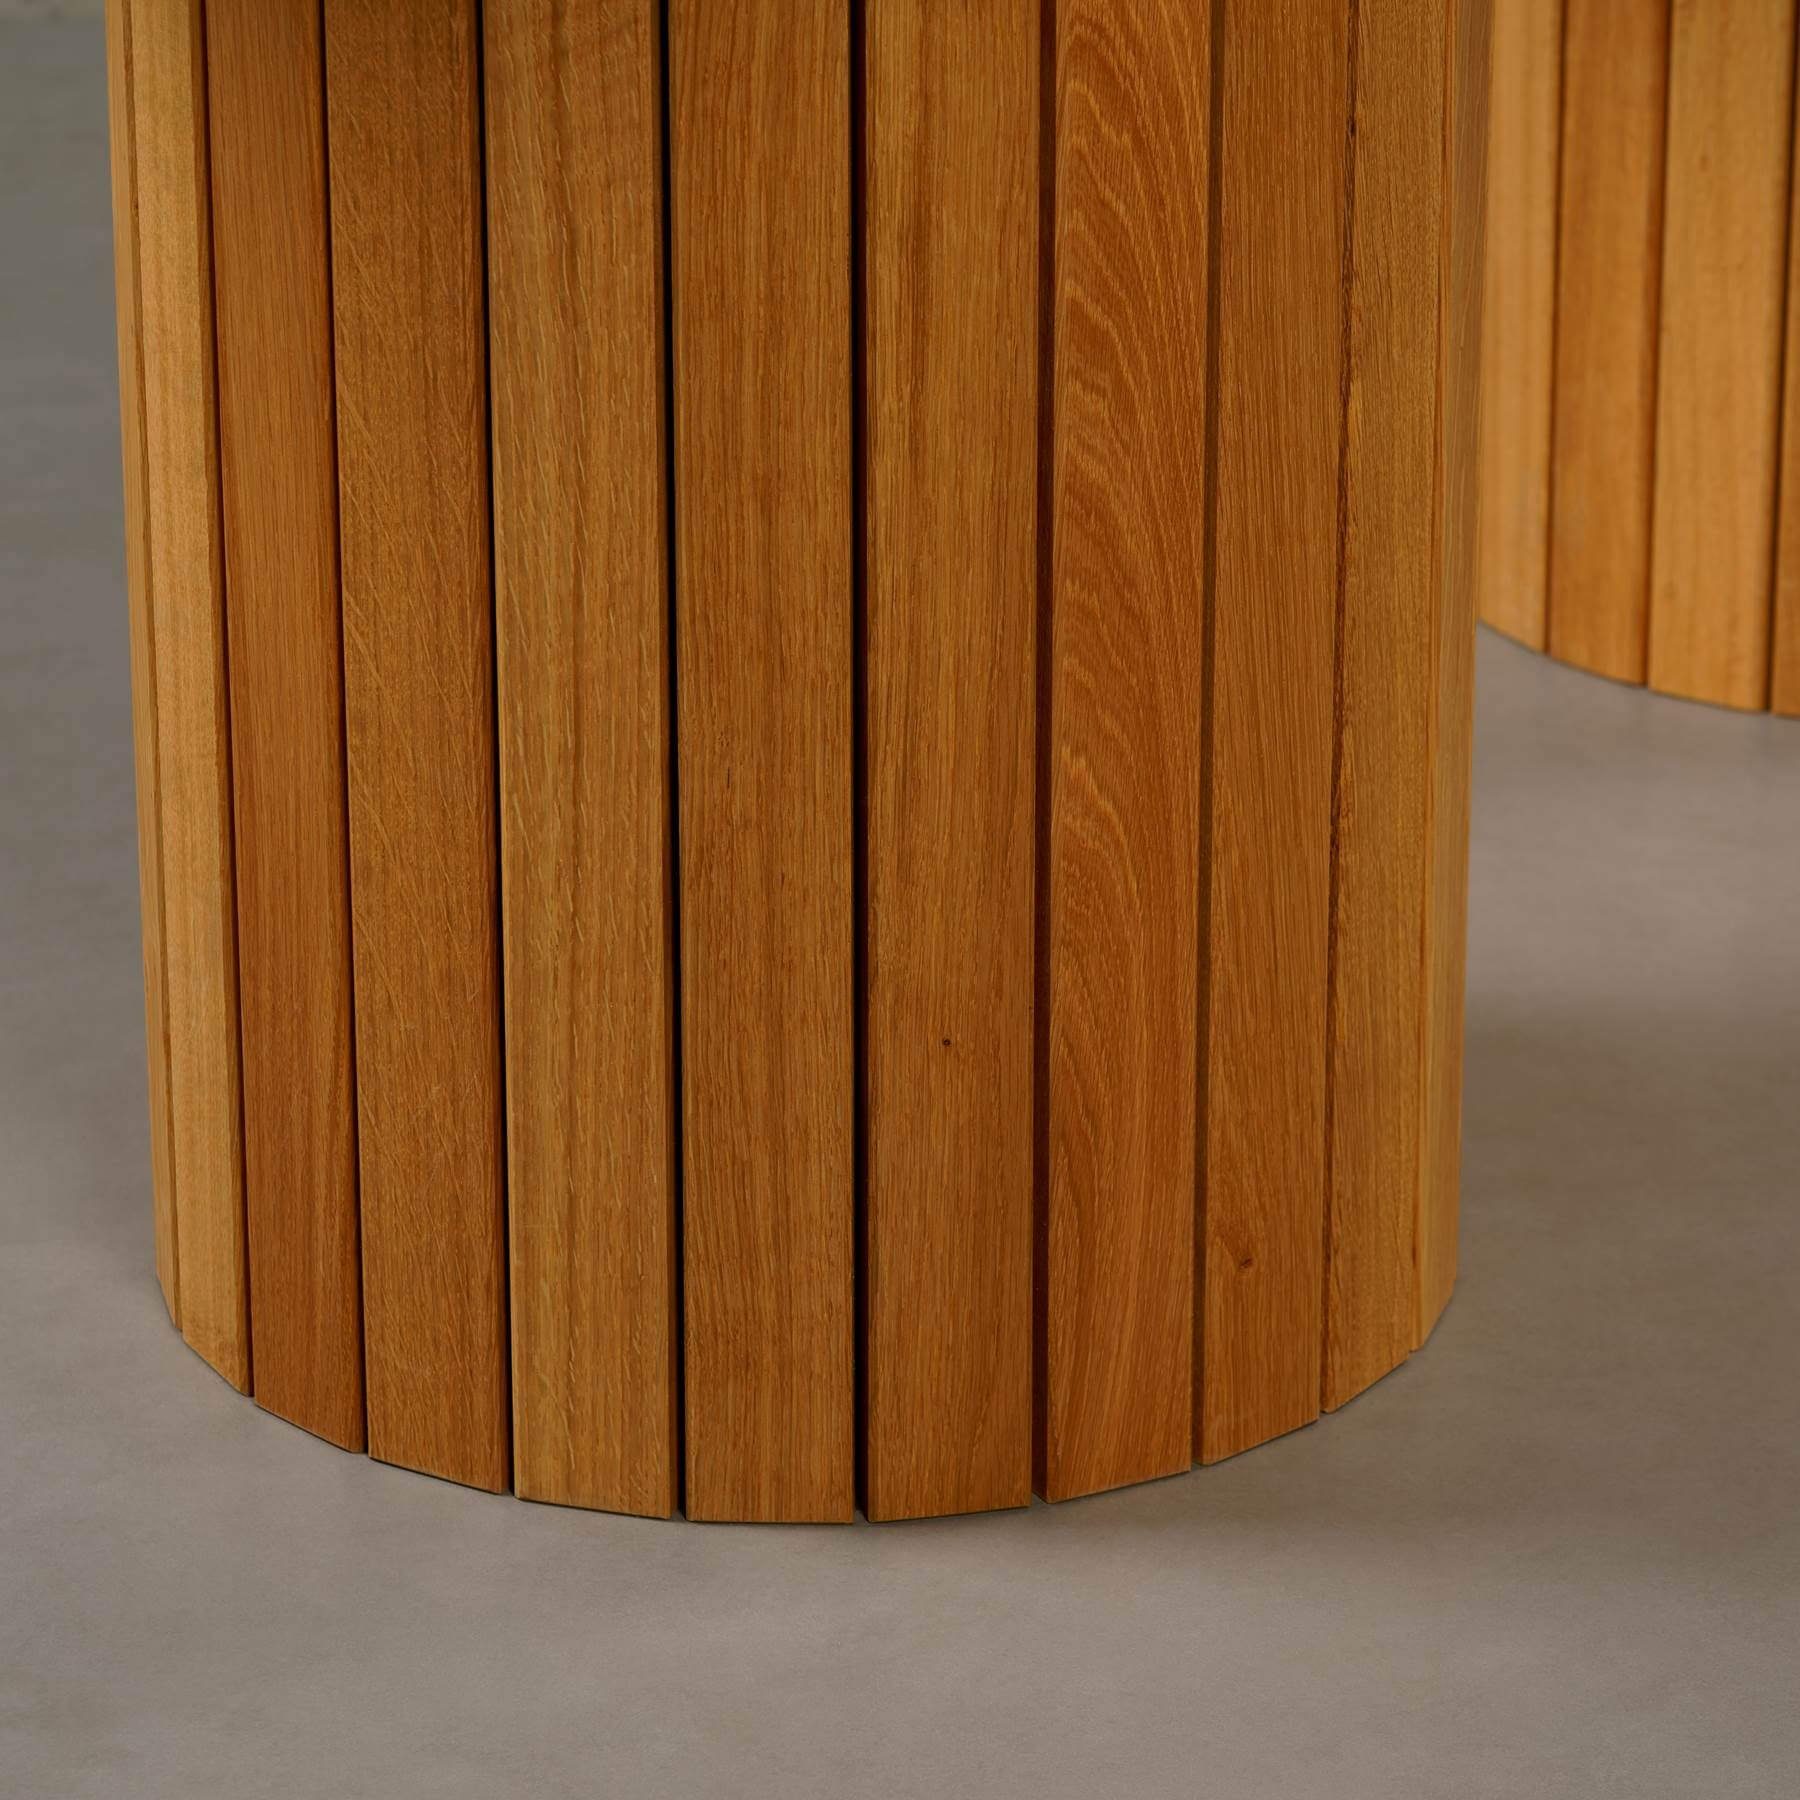 Tisch rund, ECHTEM Montana MARMOR, Atelier Venom Eichenholz 200x100x76cm mit Esstisch Esstisch Gestell, MAGNA